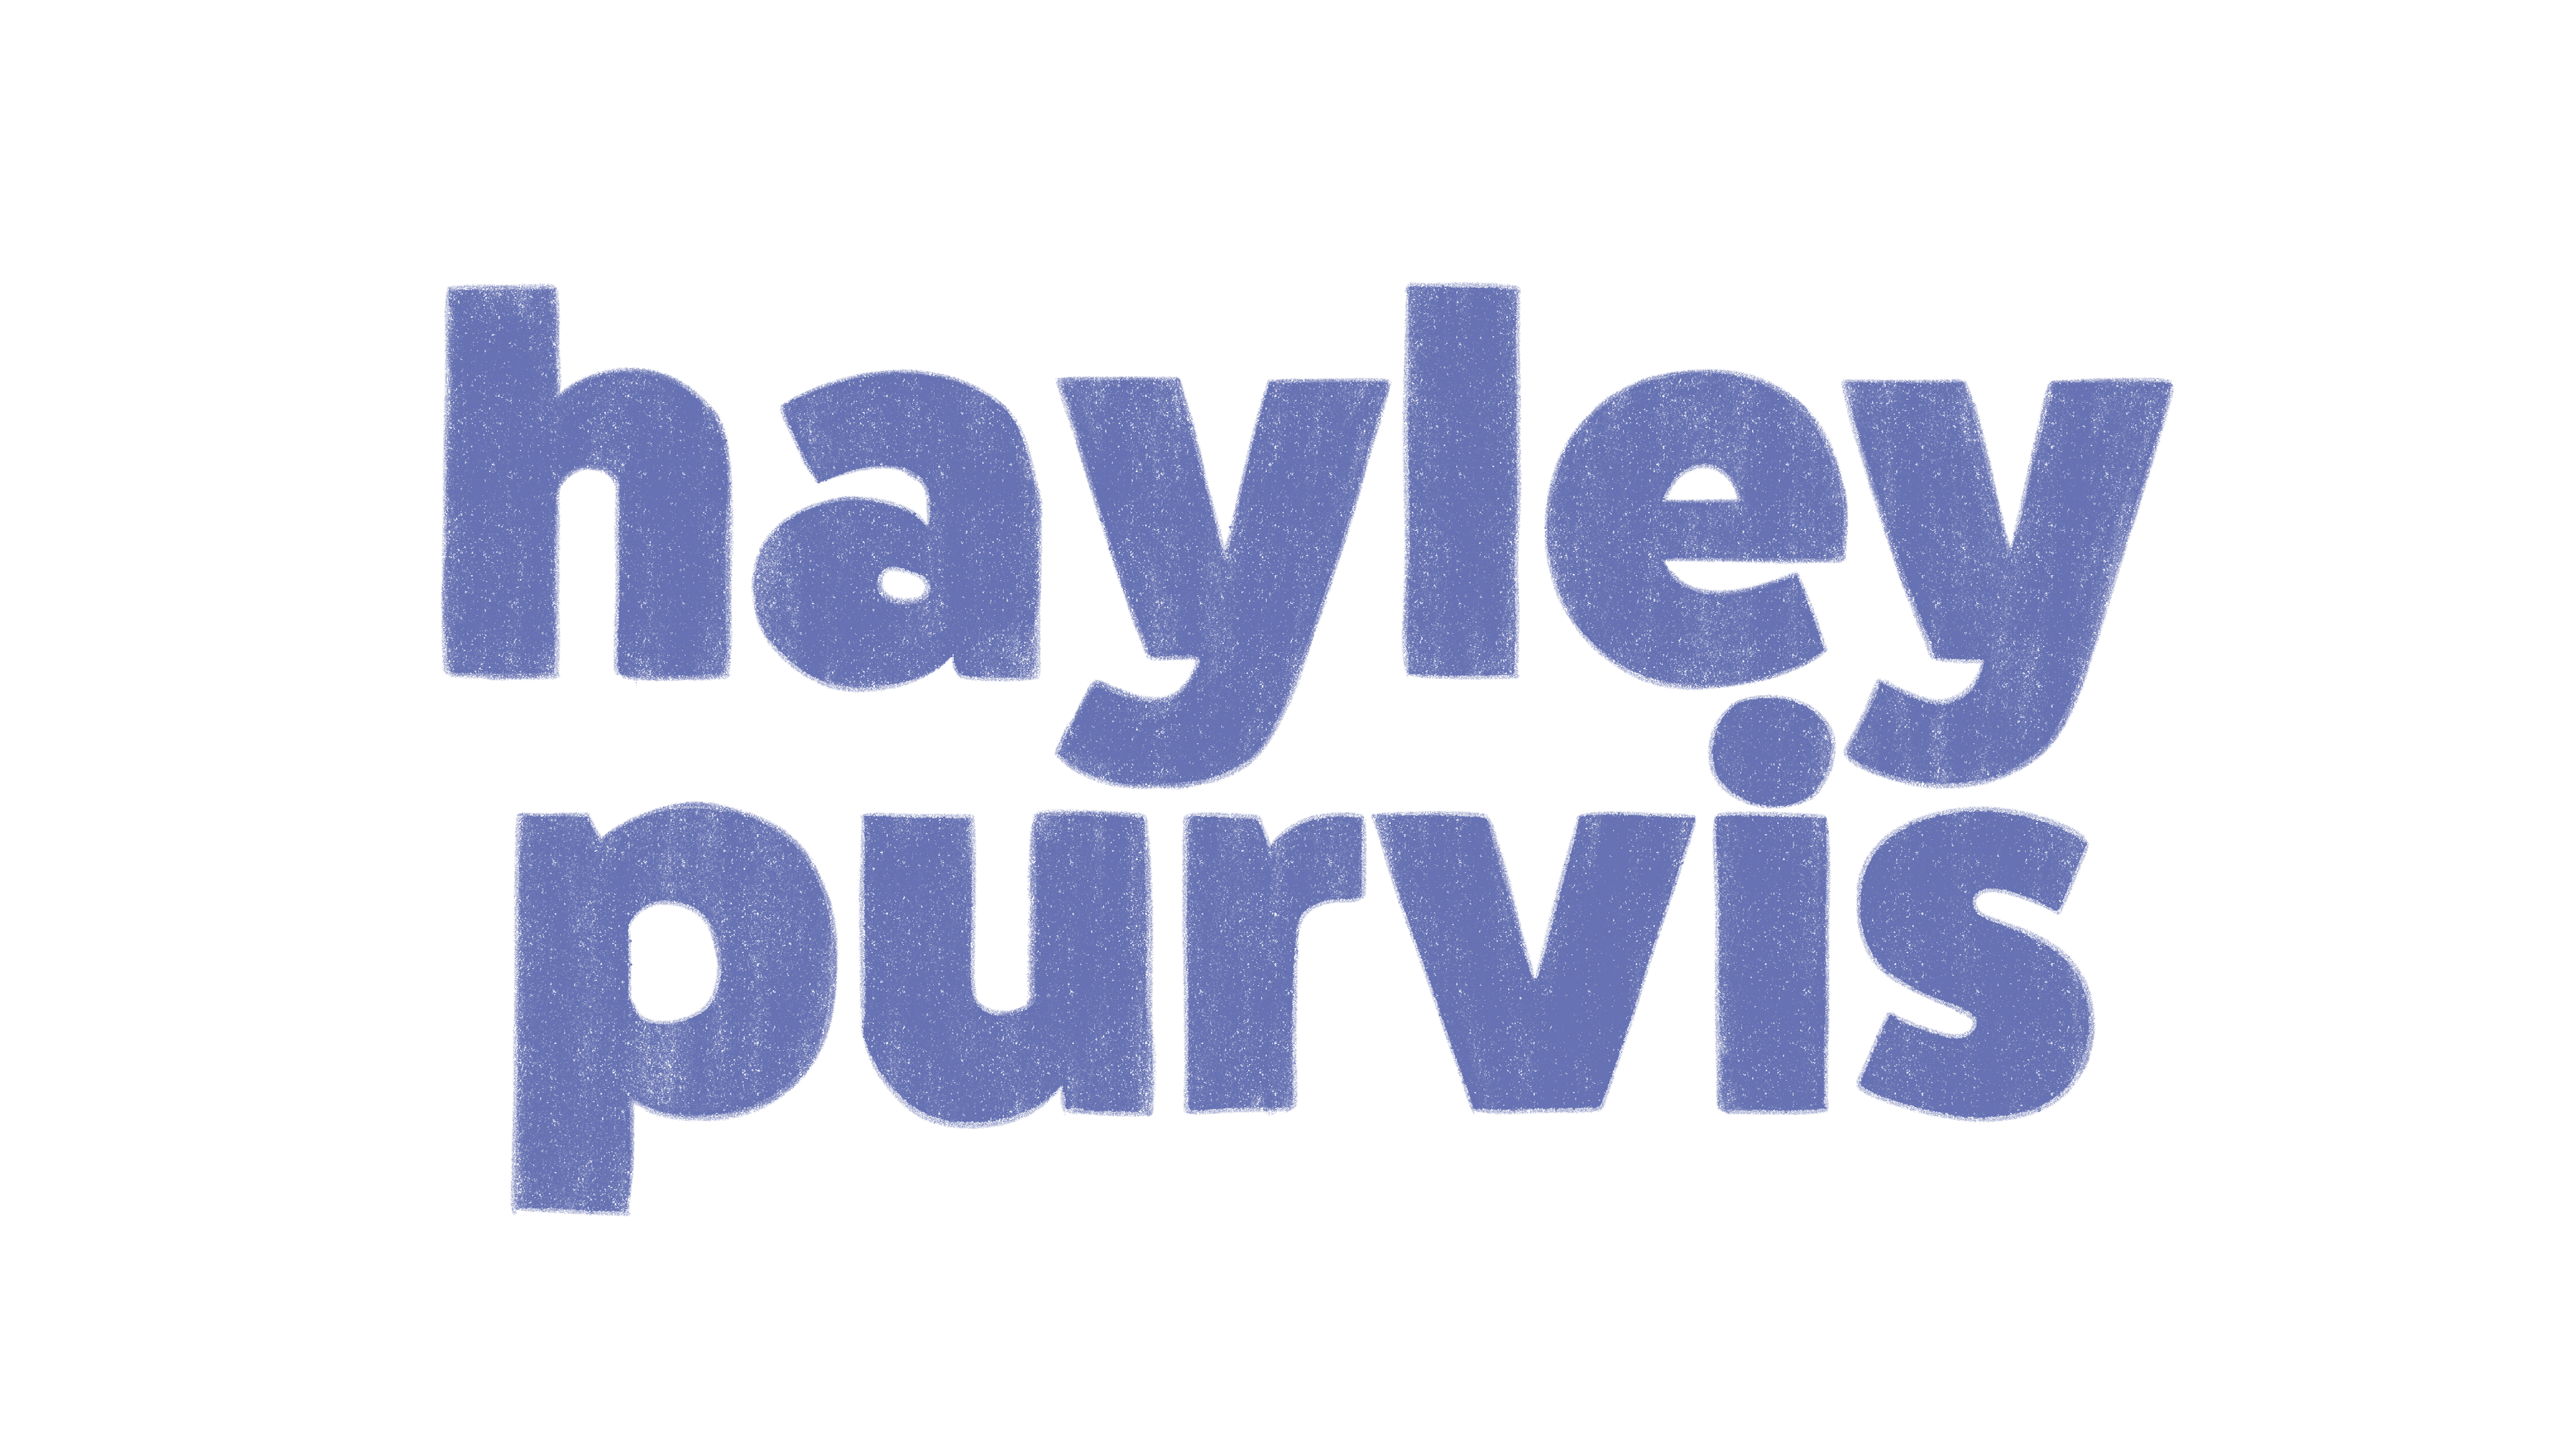 Hayley Purvis